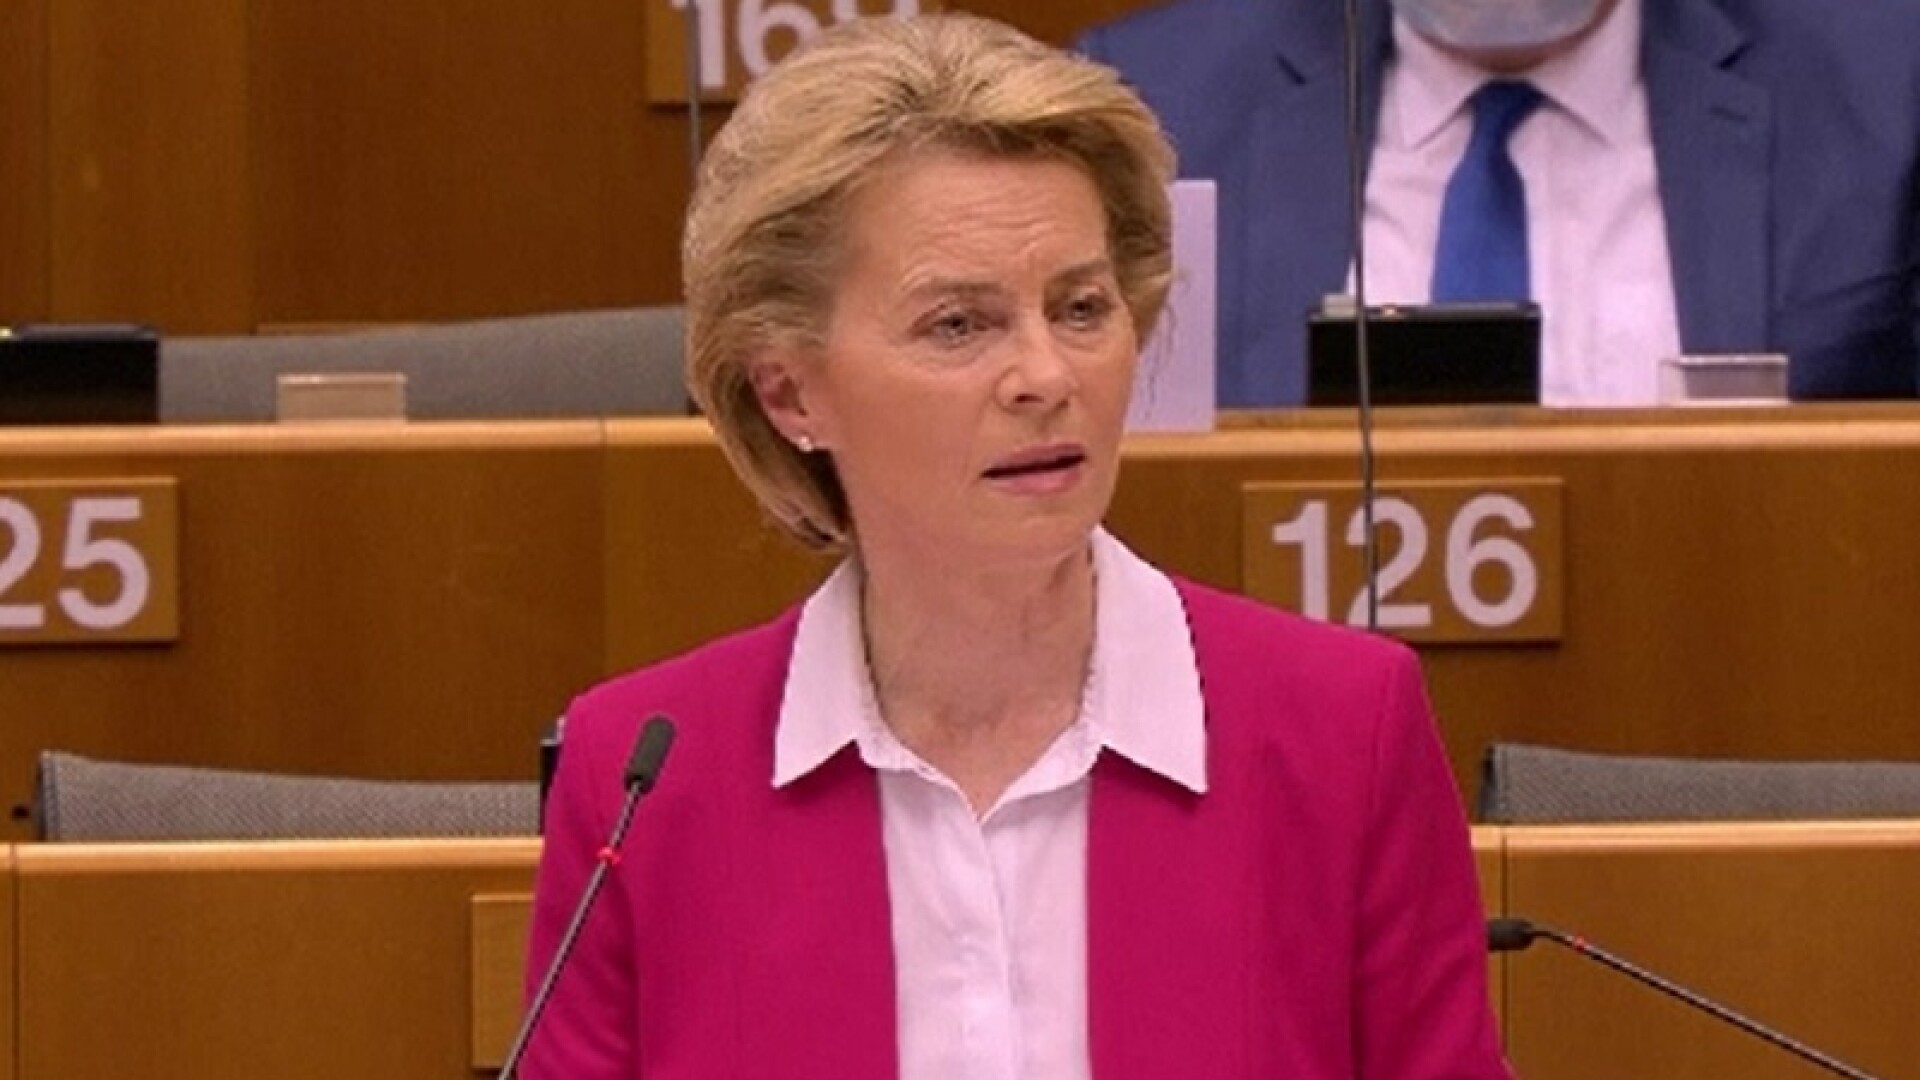 Ursula Von der Leyen, preşedintele Comisiei Europene